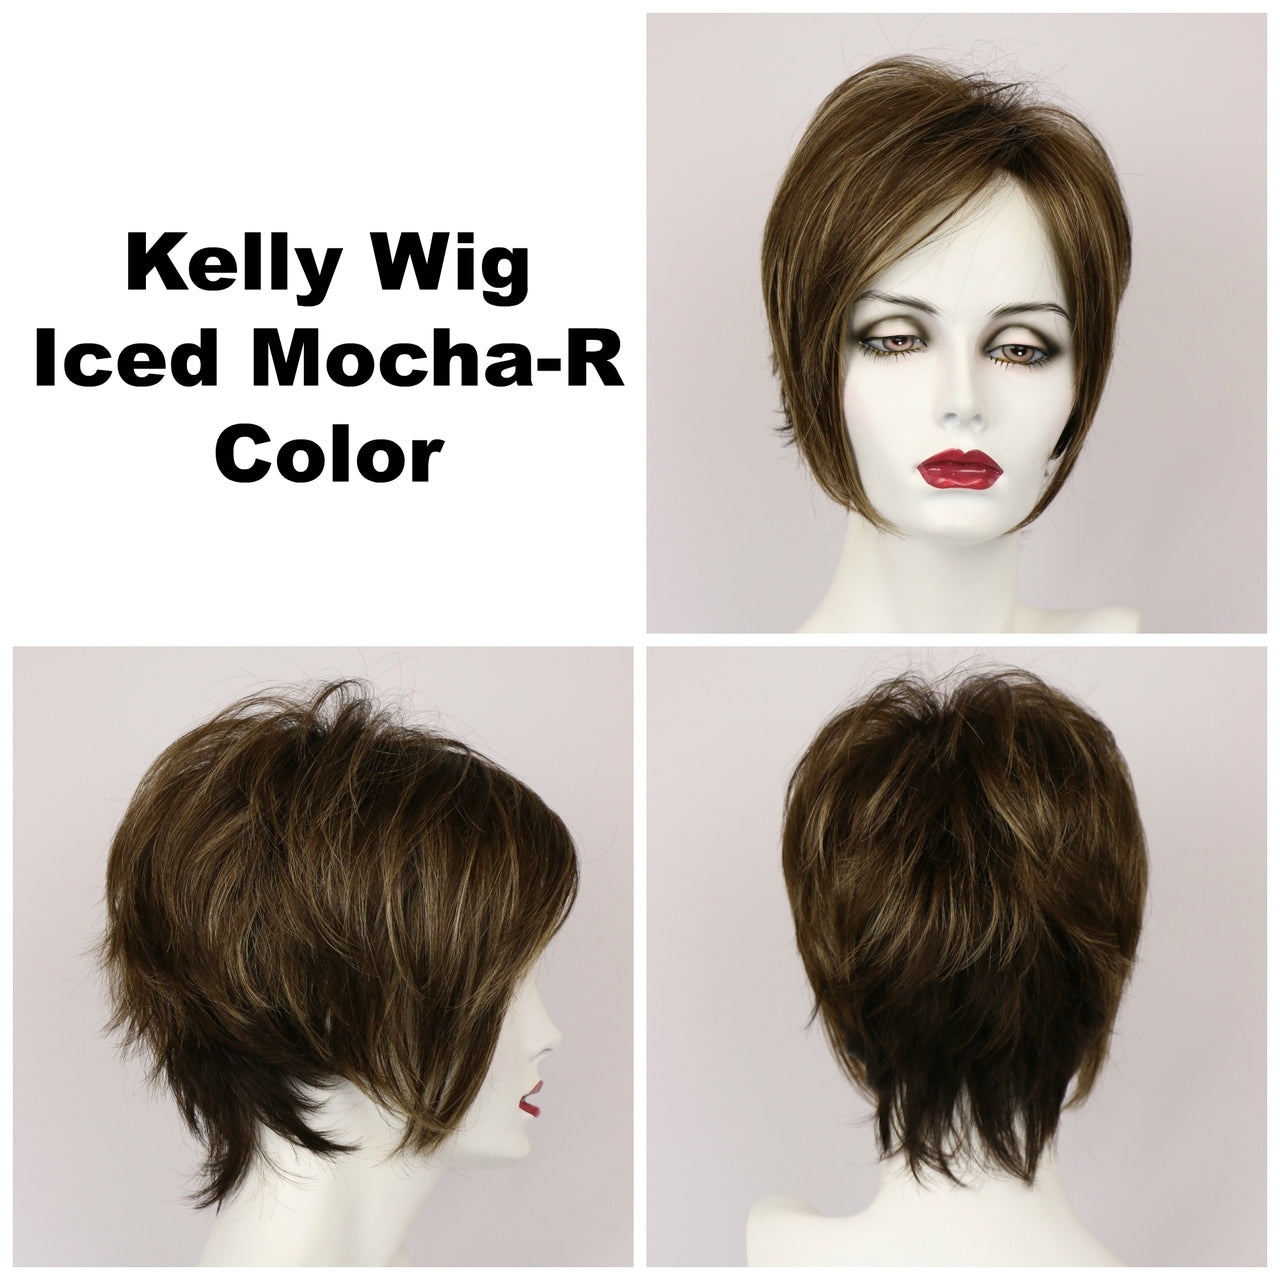 Iced Mocha-R / Kelly w/ Roots / Short Wig